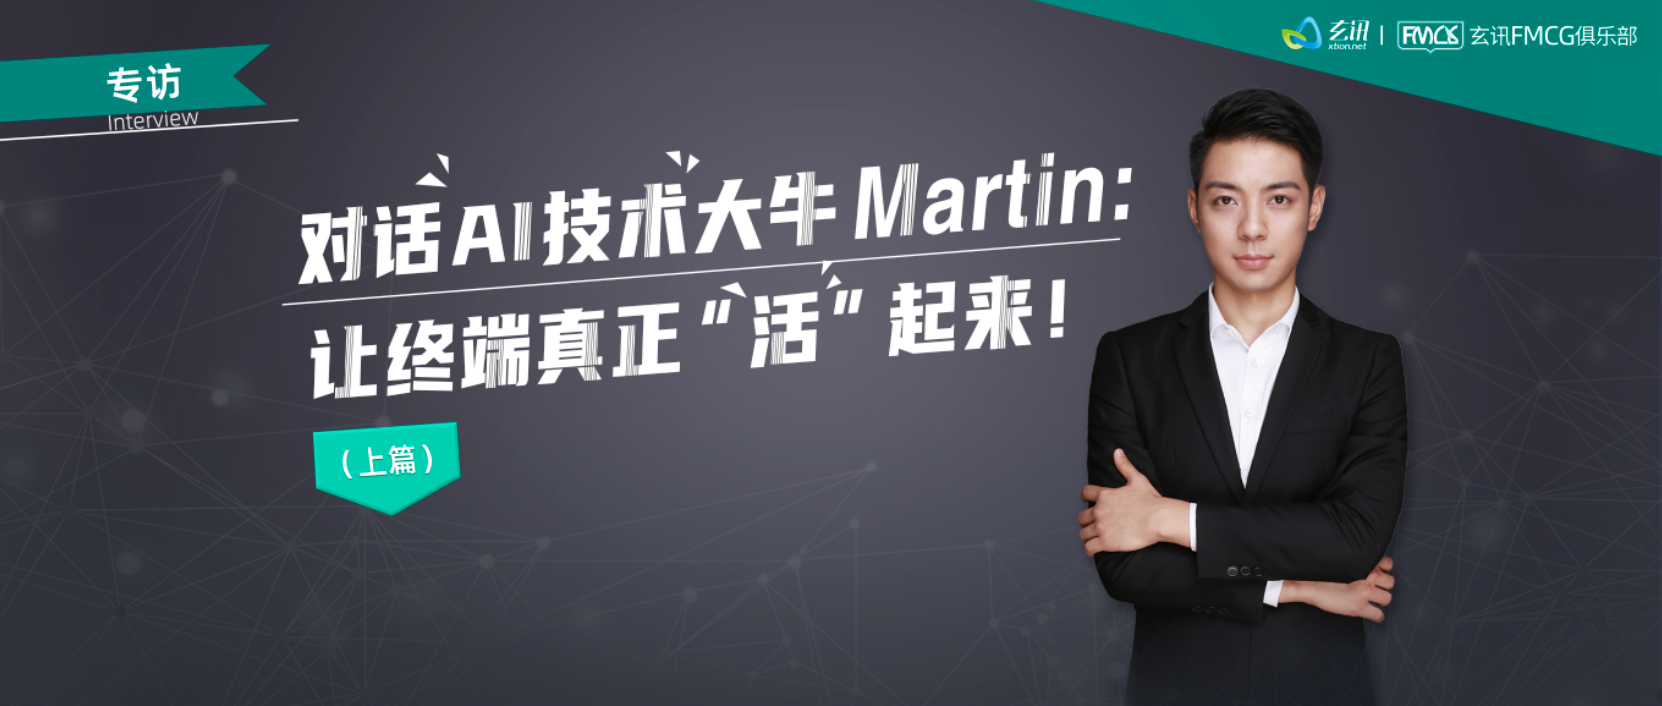 专访丨对话AI技术大牛Martin：让终端真正“活”起来！（上）